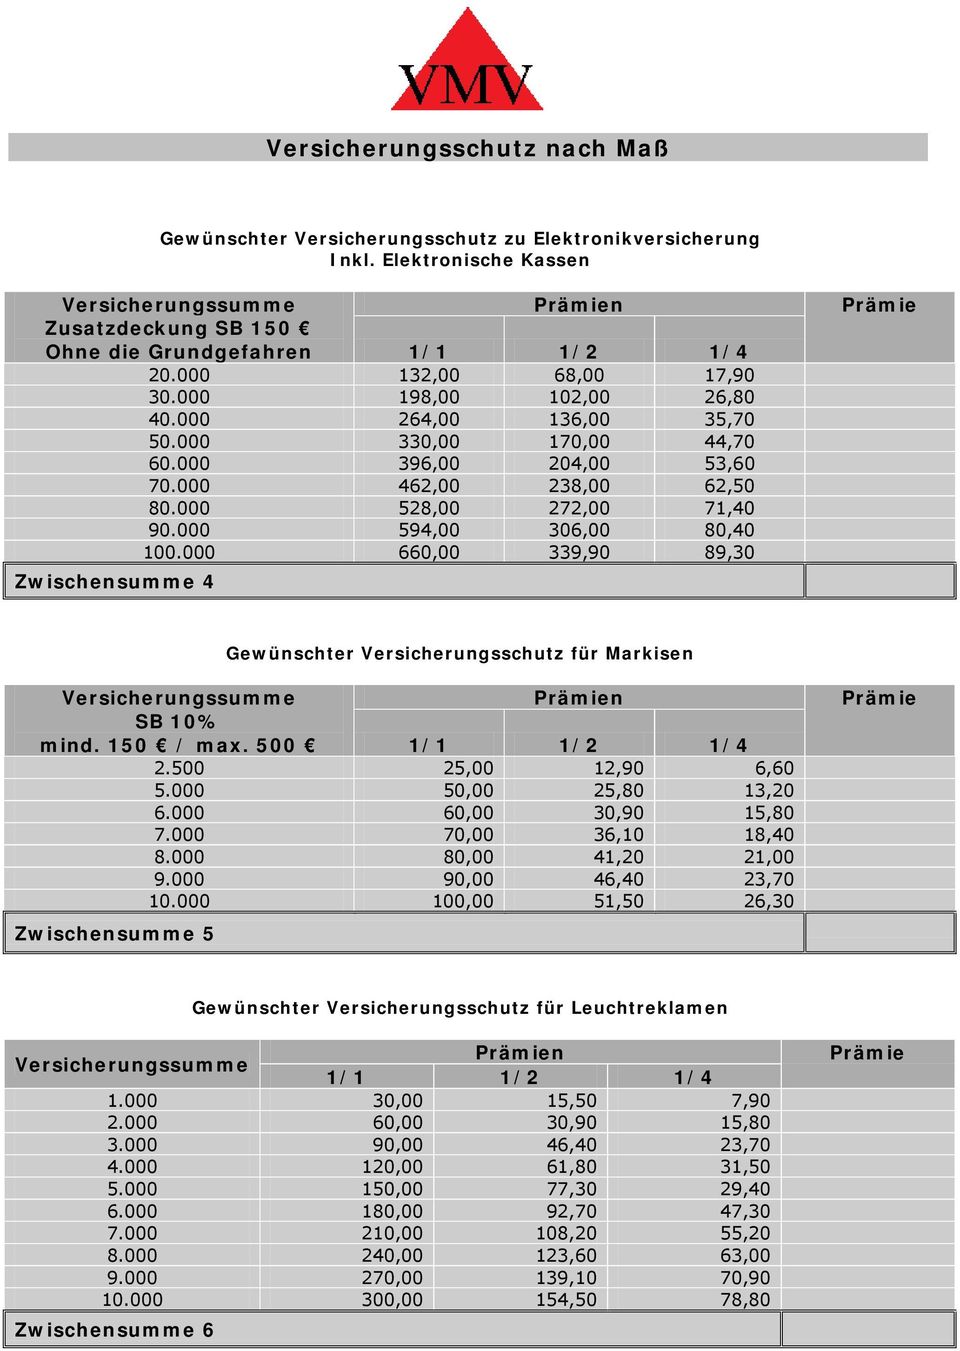 000 594,00 306,00 80,40 100.000 660,00 339,90 89,30 Zwischensumme 4 Prämie Gewünschter Versicherungsschutz für Markisen Versicherungssumme Prämien SB 10% mind. 150 / max. 500 1/1 1/2 1/4 2.